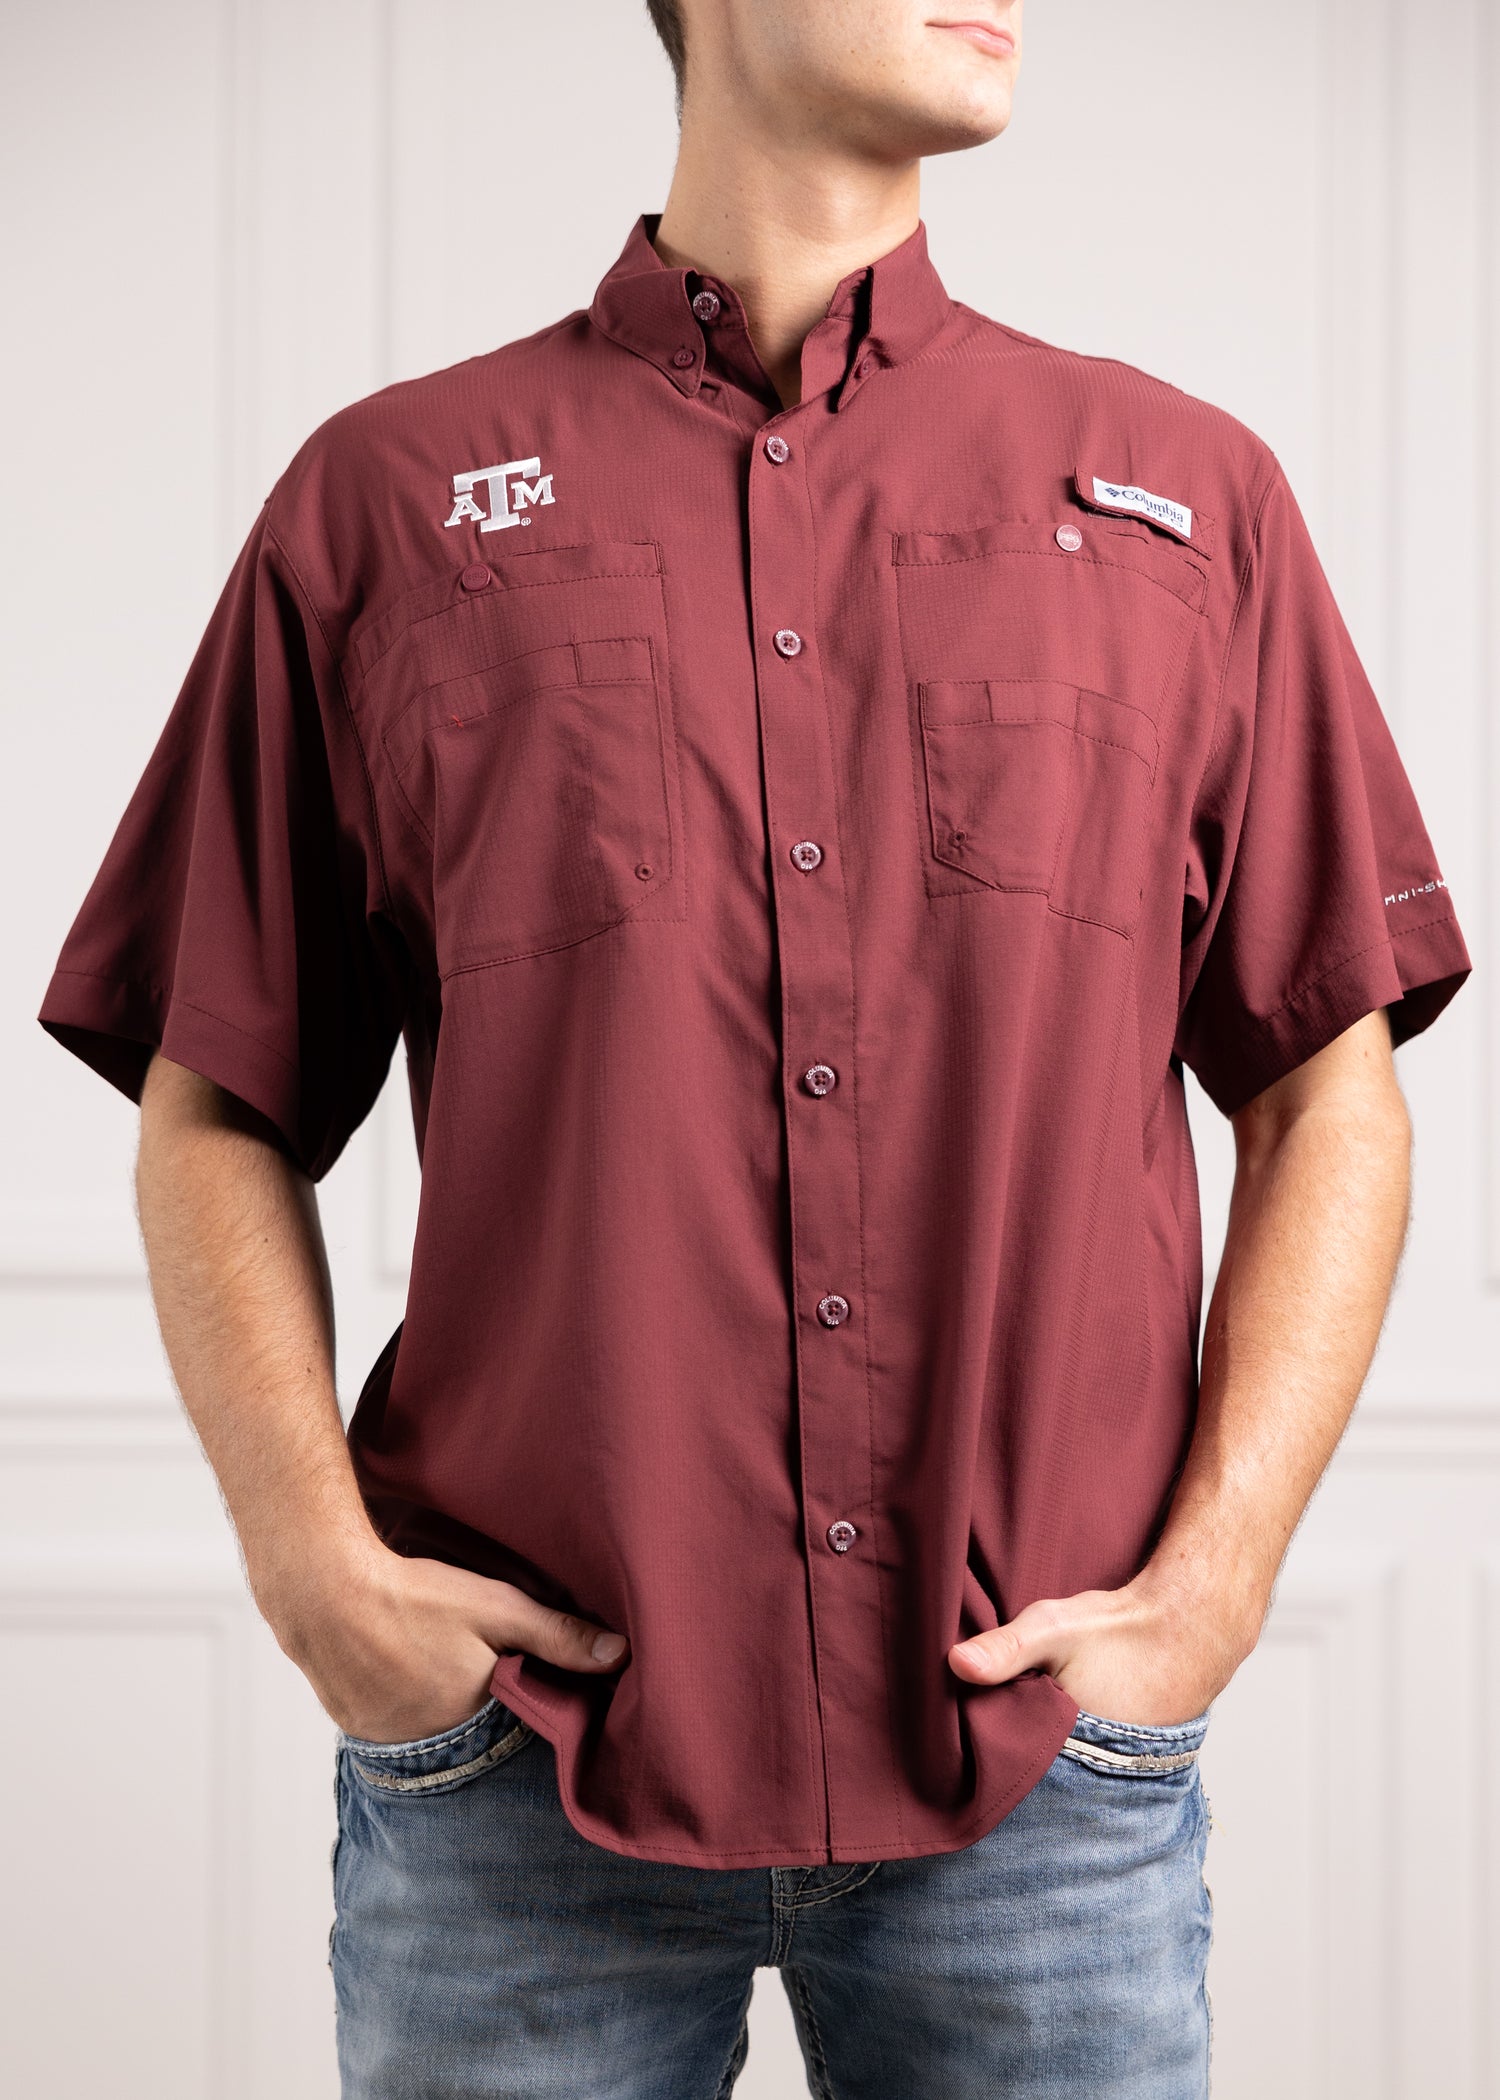 Texas A&M Columbia Tamiami Short Sleeve Maroon Fishing Shirt M / Deep Maroon